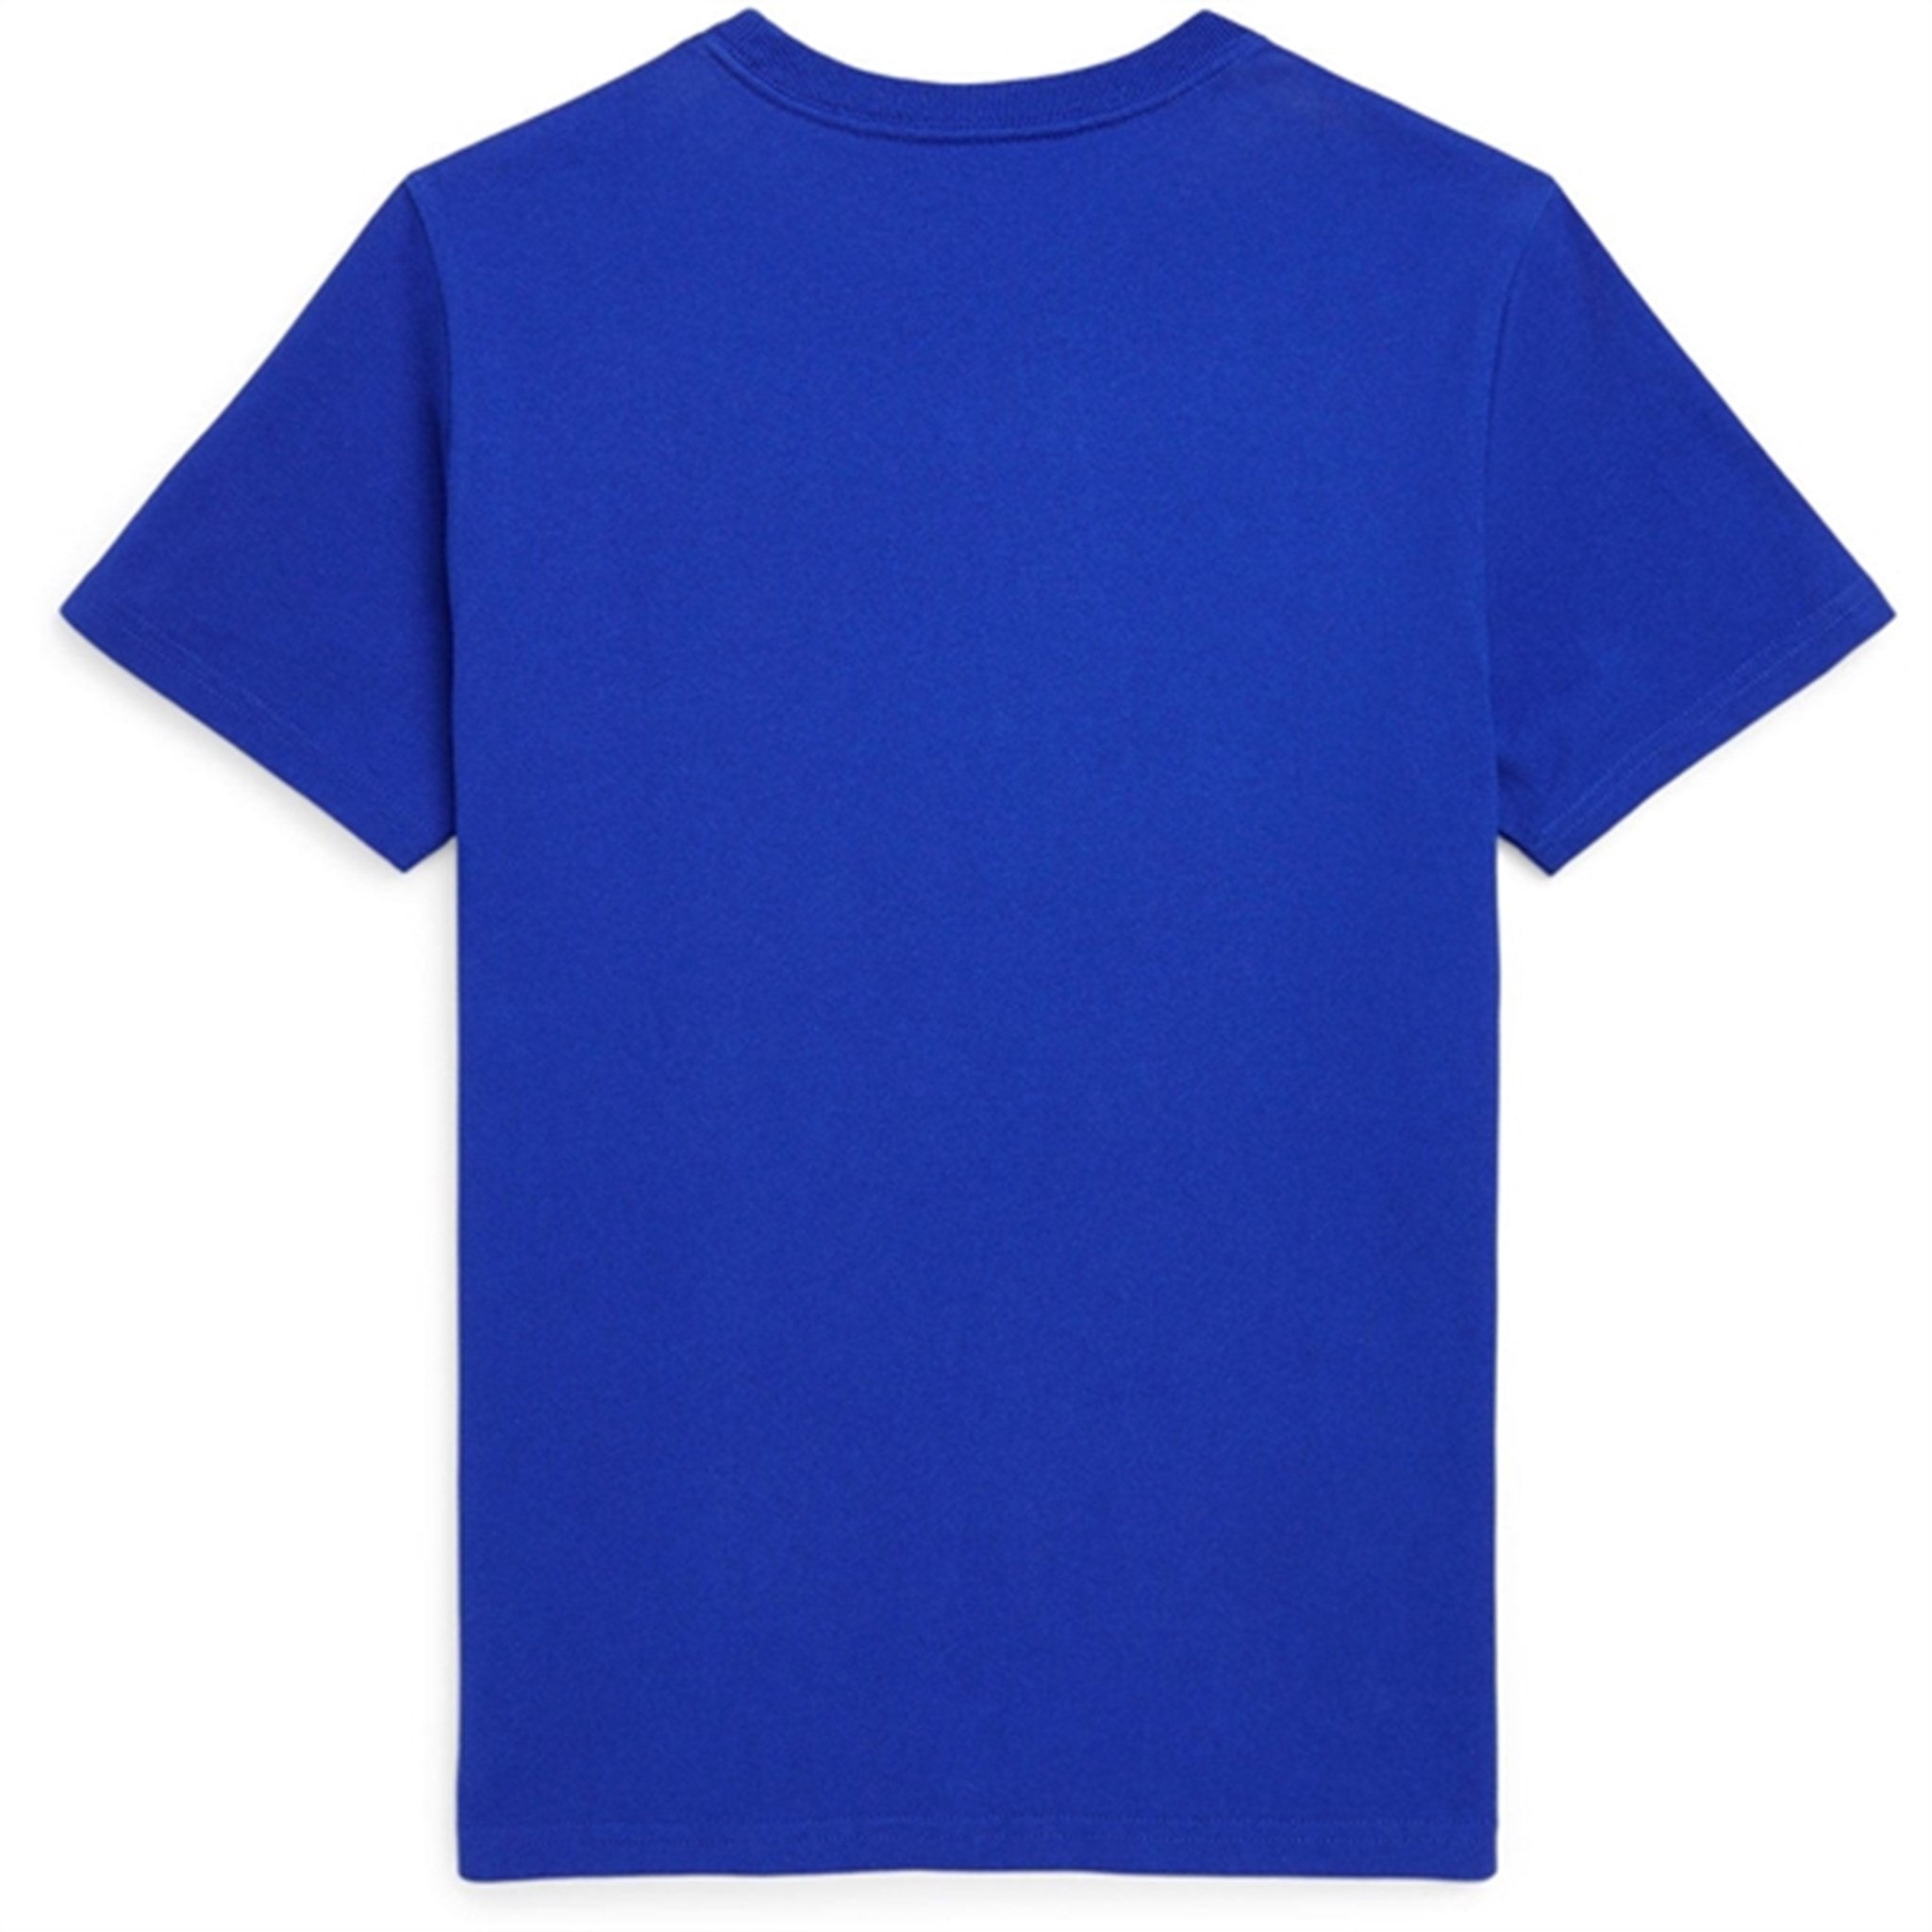 Polo Ralph Lauren Boys T-Shirt Sapphire Star 2